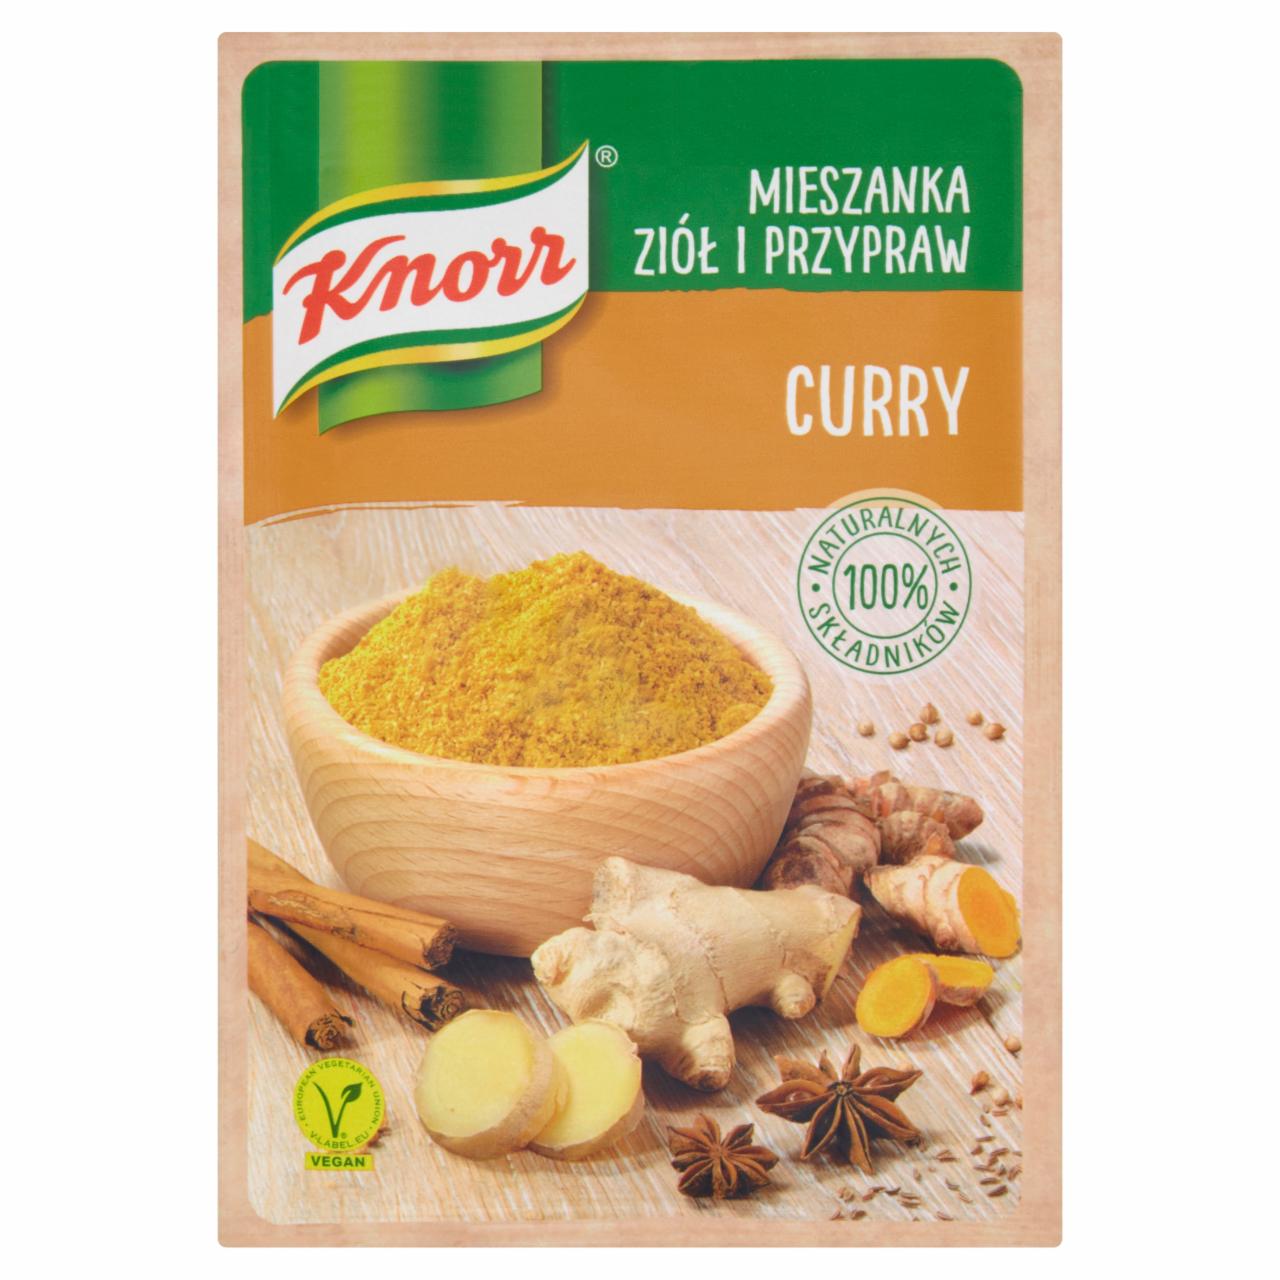 Zdjęcia - Knorr Mieszanka ziół i przypraw curry 20 g